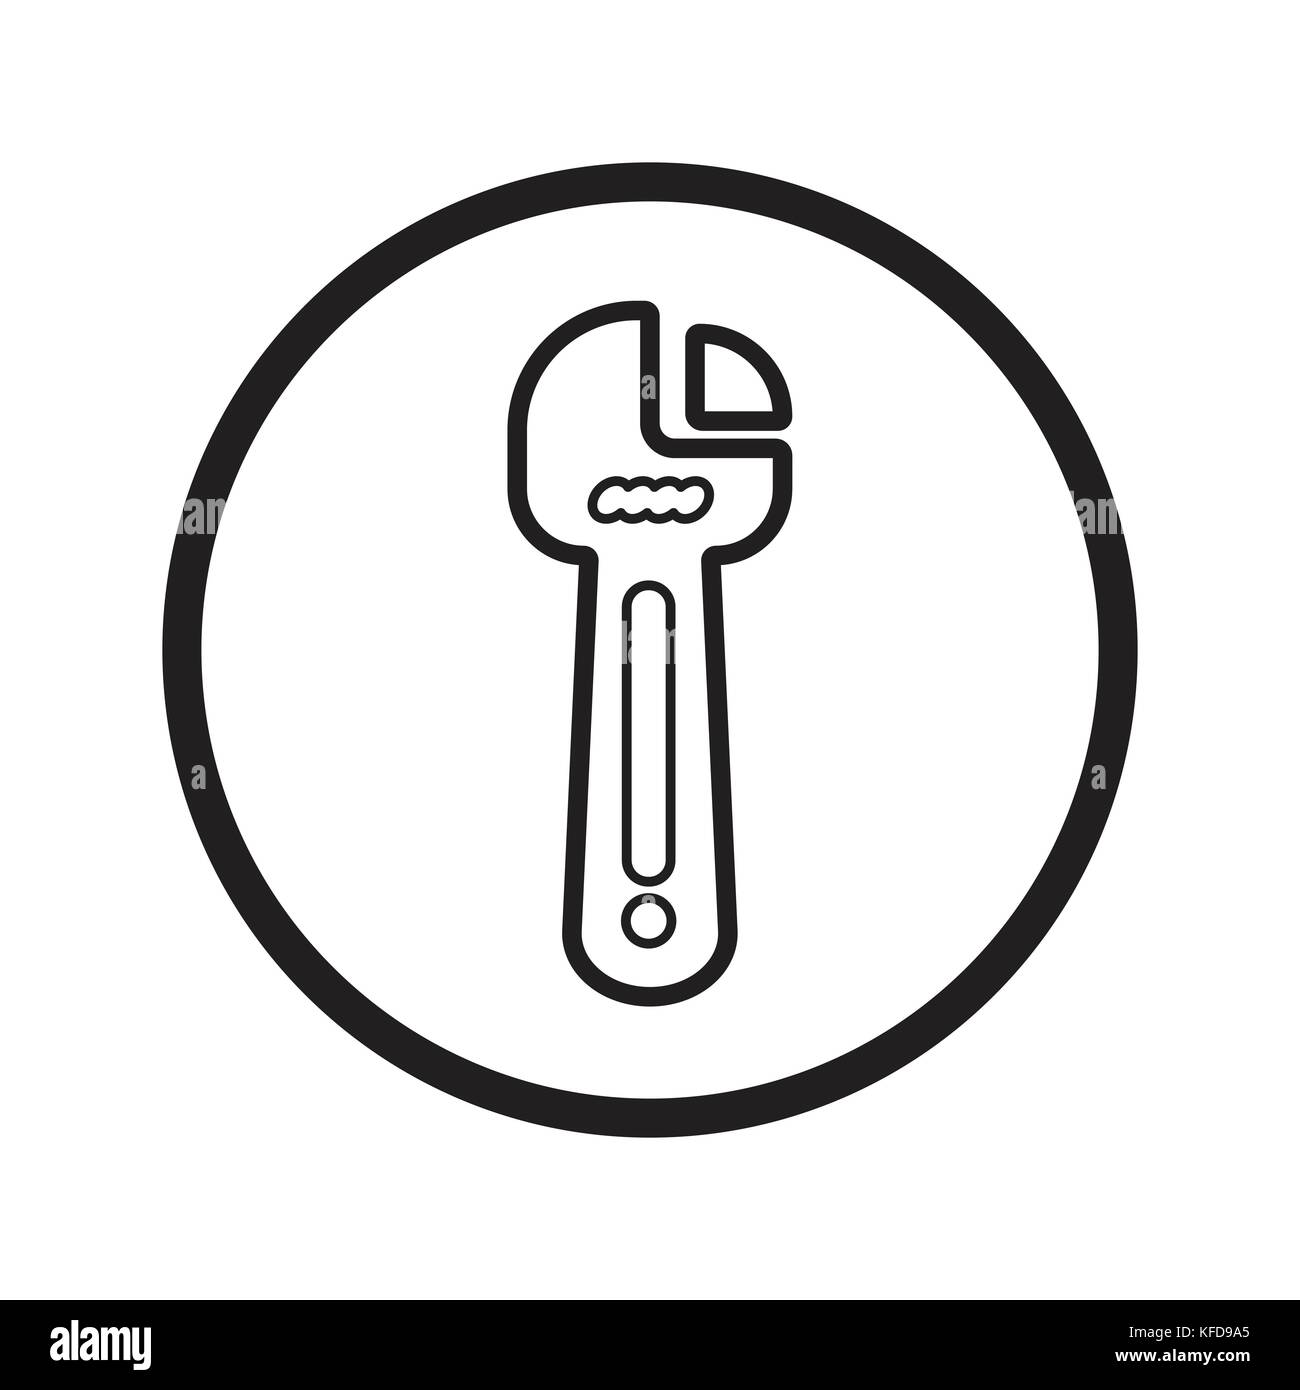 Clé linéaire icône réparation fix, symbole emblématique des outils dans un cercle, sur fond blanc. vector design iconique. Illustration de Vecteur